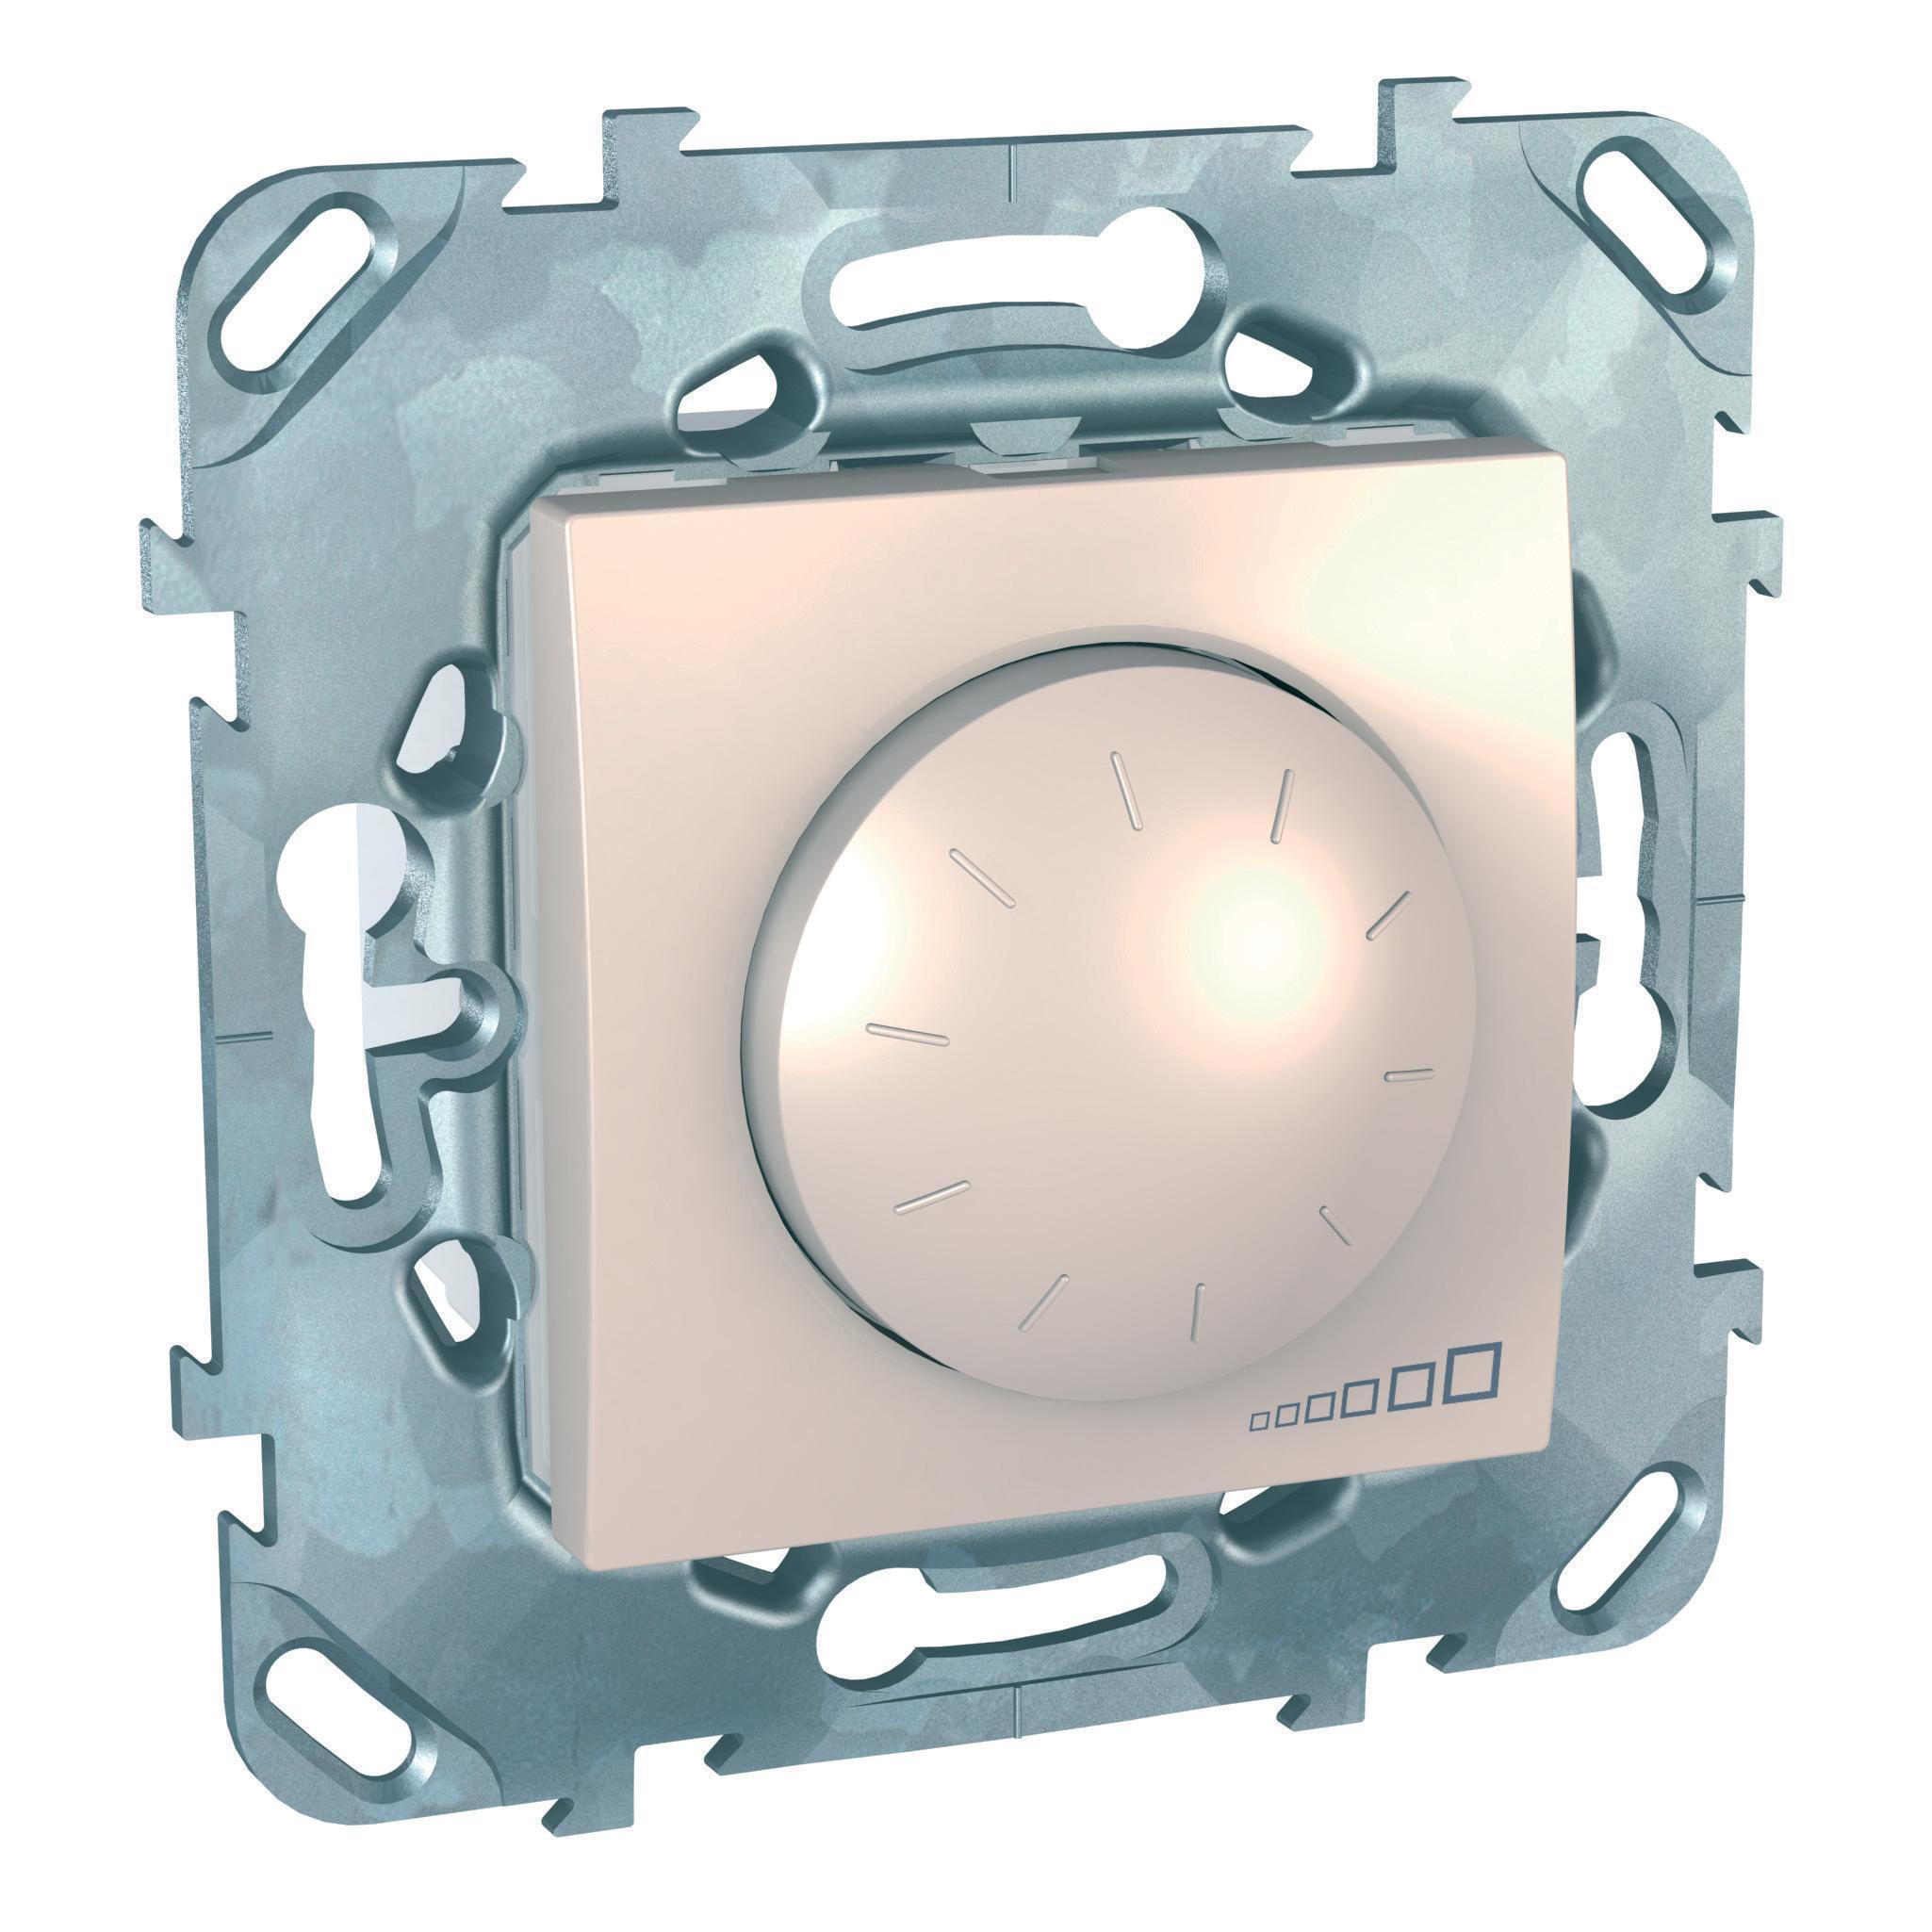 Светорегулятор поворотно-нажимной 400Вт LED (универсальный) , Бежевый, серия Unica, Schneider Electric артикул MGU5.513.25